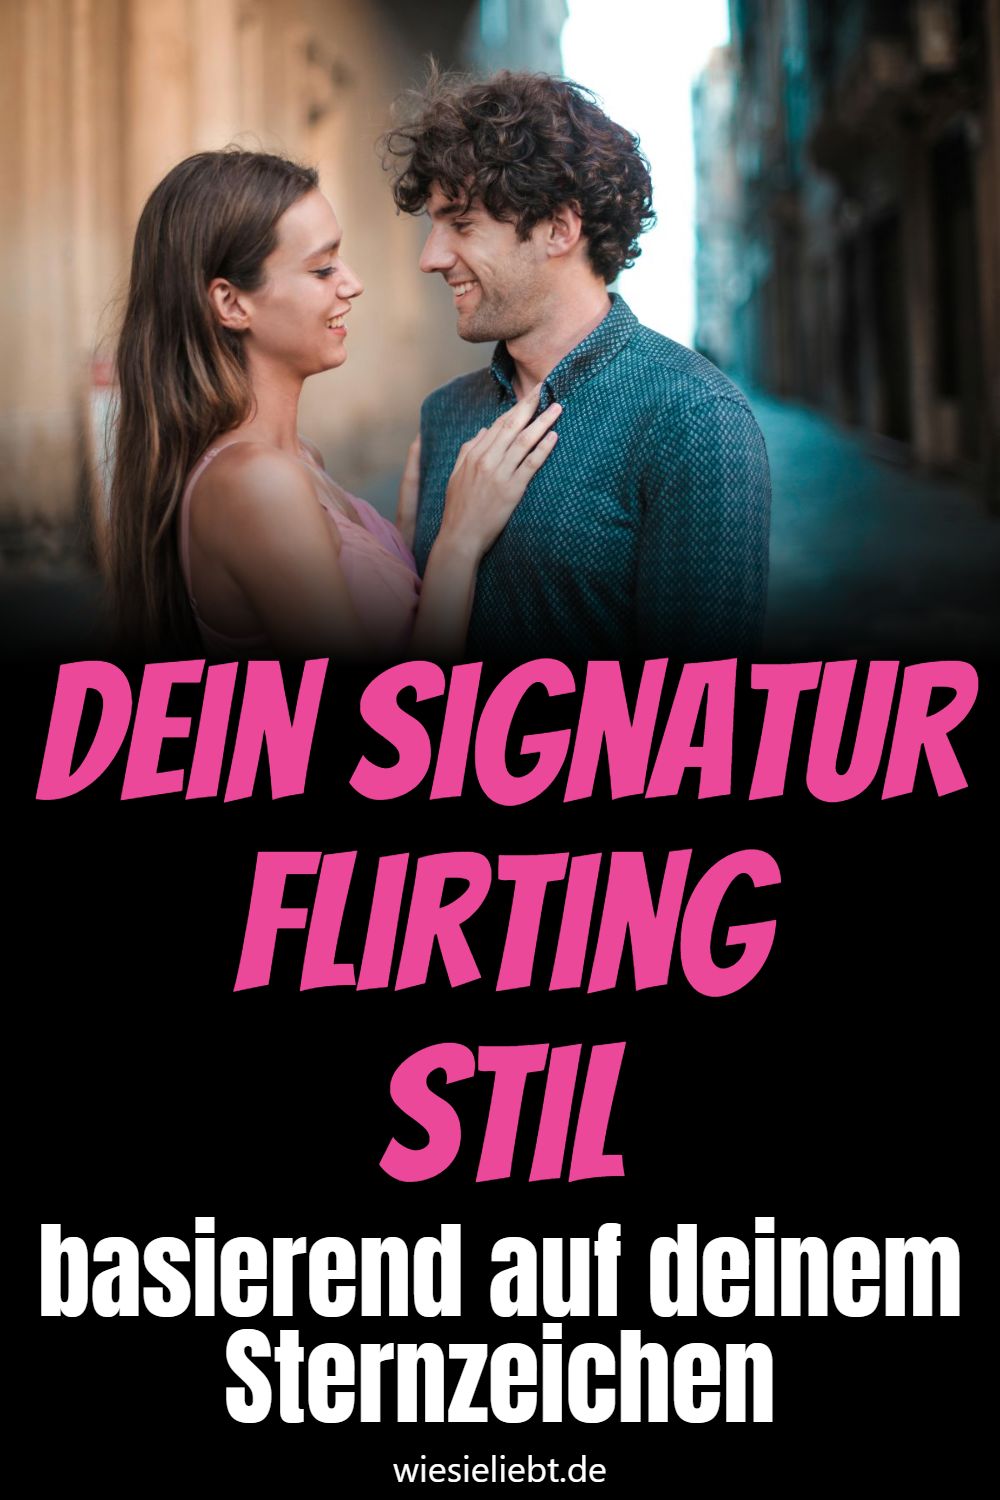 Dein Signatur FlirtingStil basierend auf deinem Sternzeichen